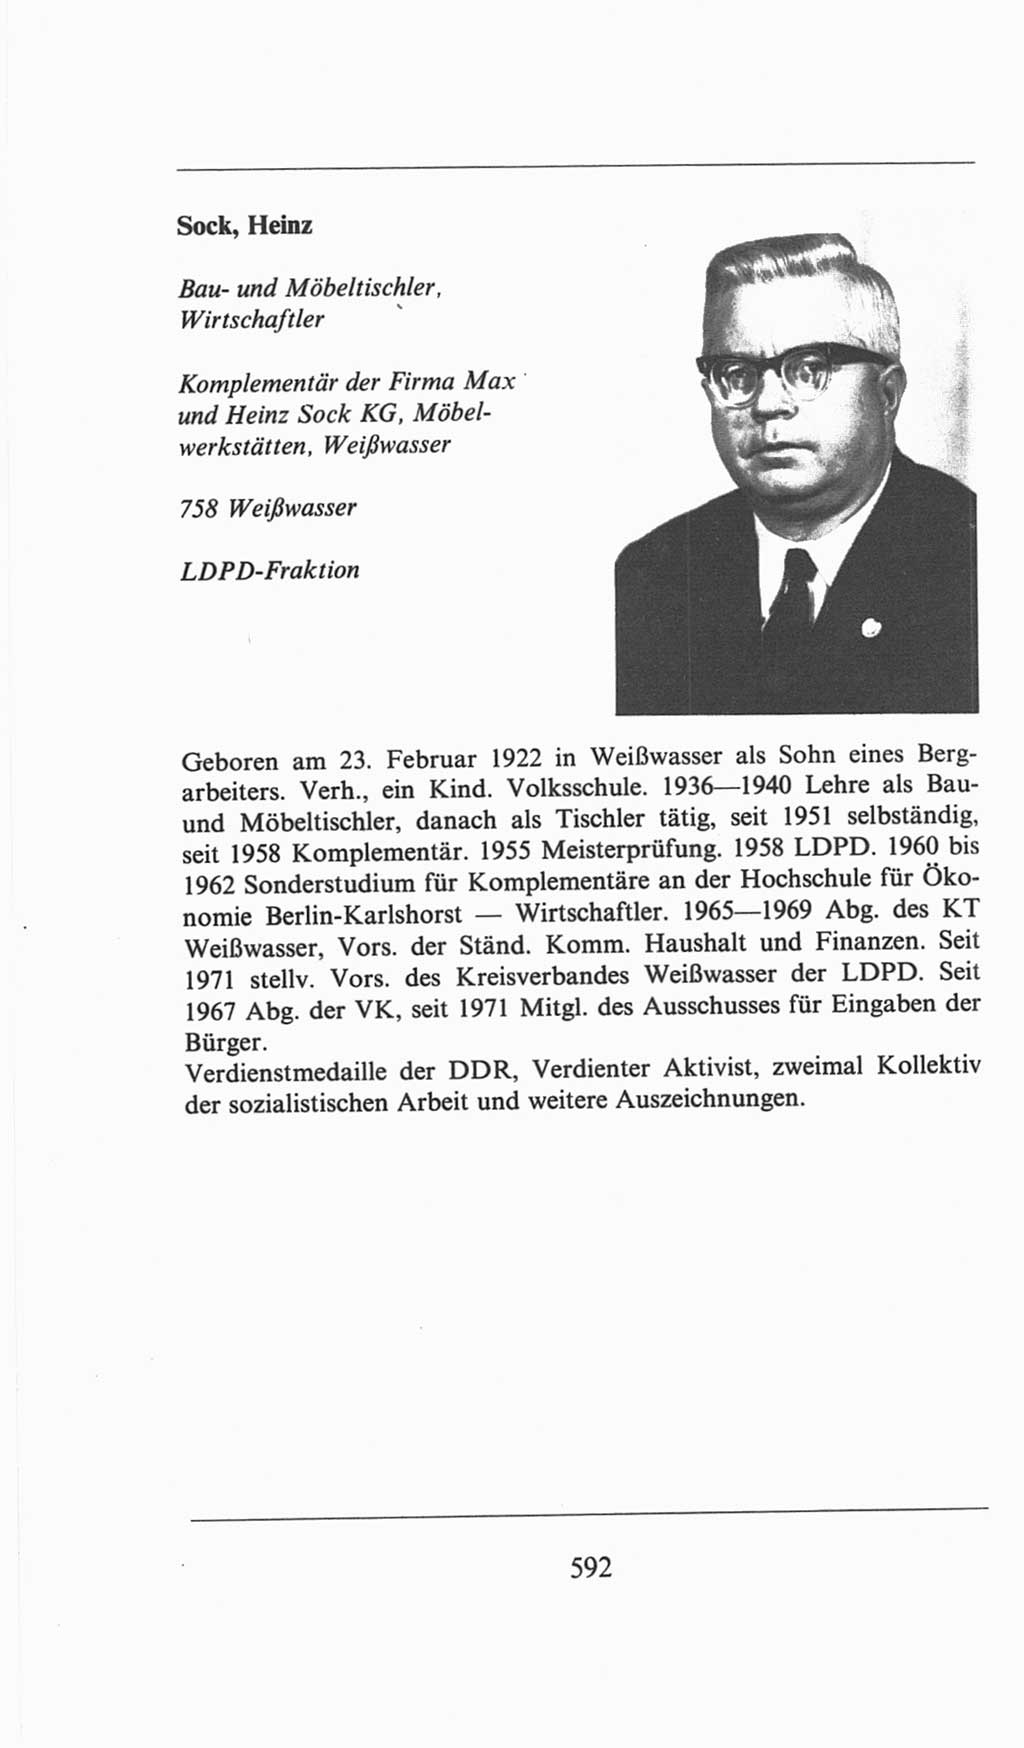 Volkskammer (VK) der Deutschen Demokratischen Republik (DDR), 6. Wahlperiode 1971-1976, Seite 592 (VK. DDR 6. WP. 1971-1976, S. 592)